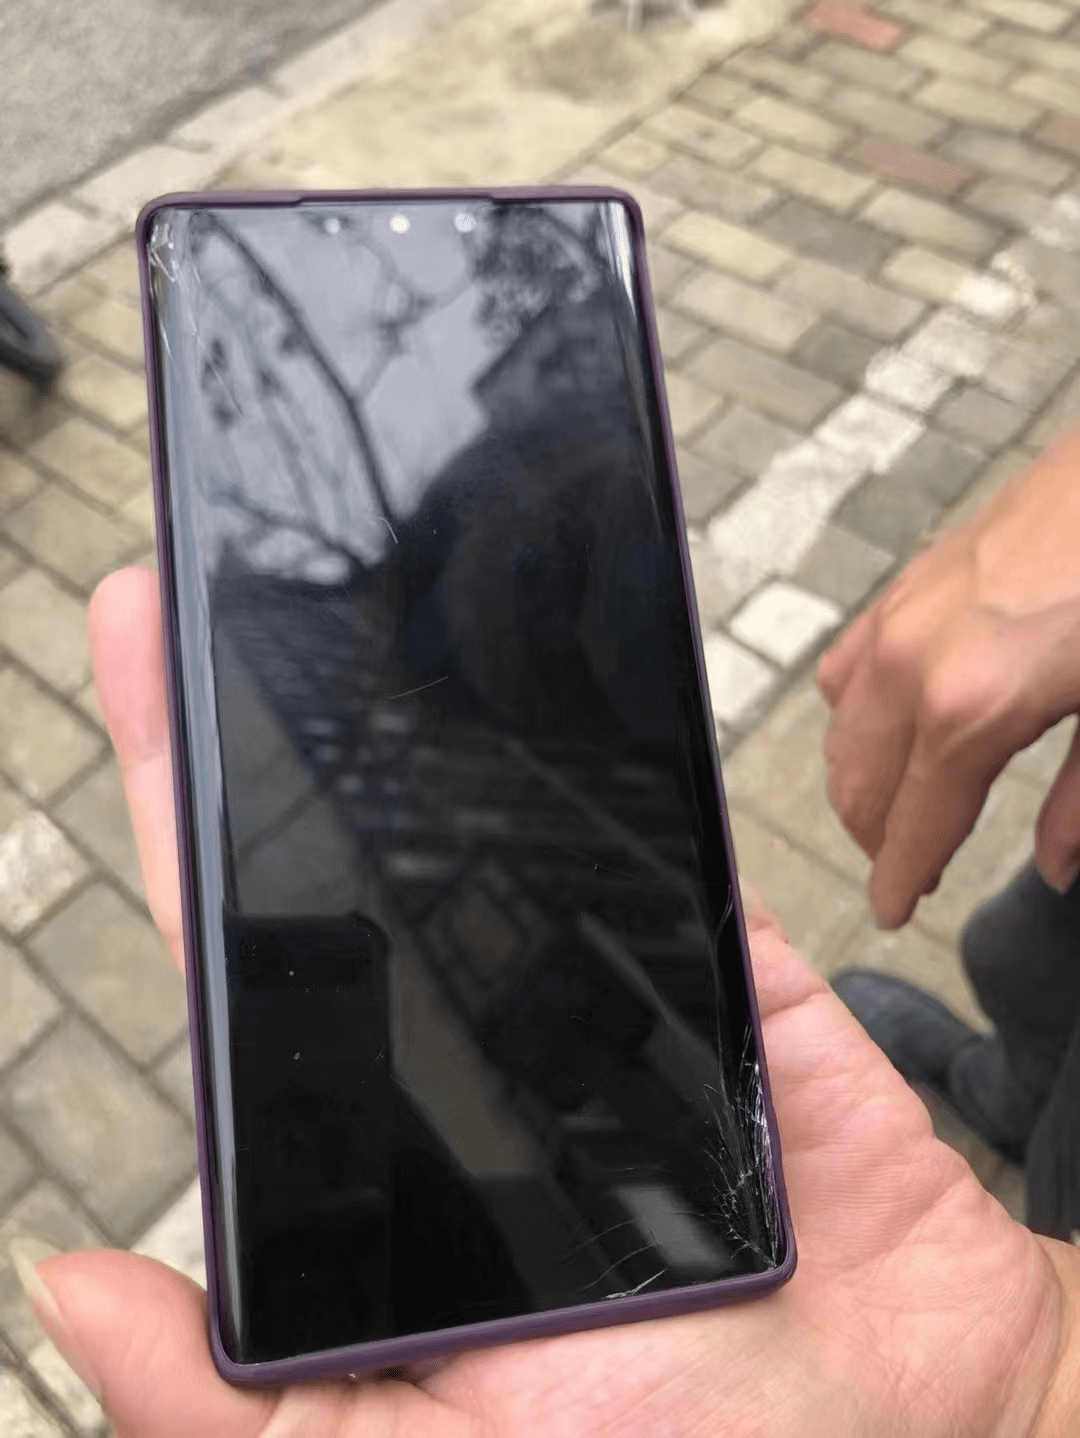 华为手机摔坏屏幕失灵了
:广西南宁：“手机碰瓷”要当心 民警提醒勿“私了”